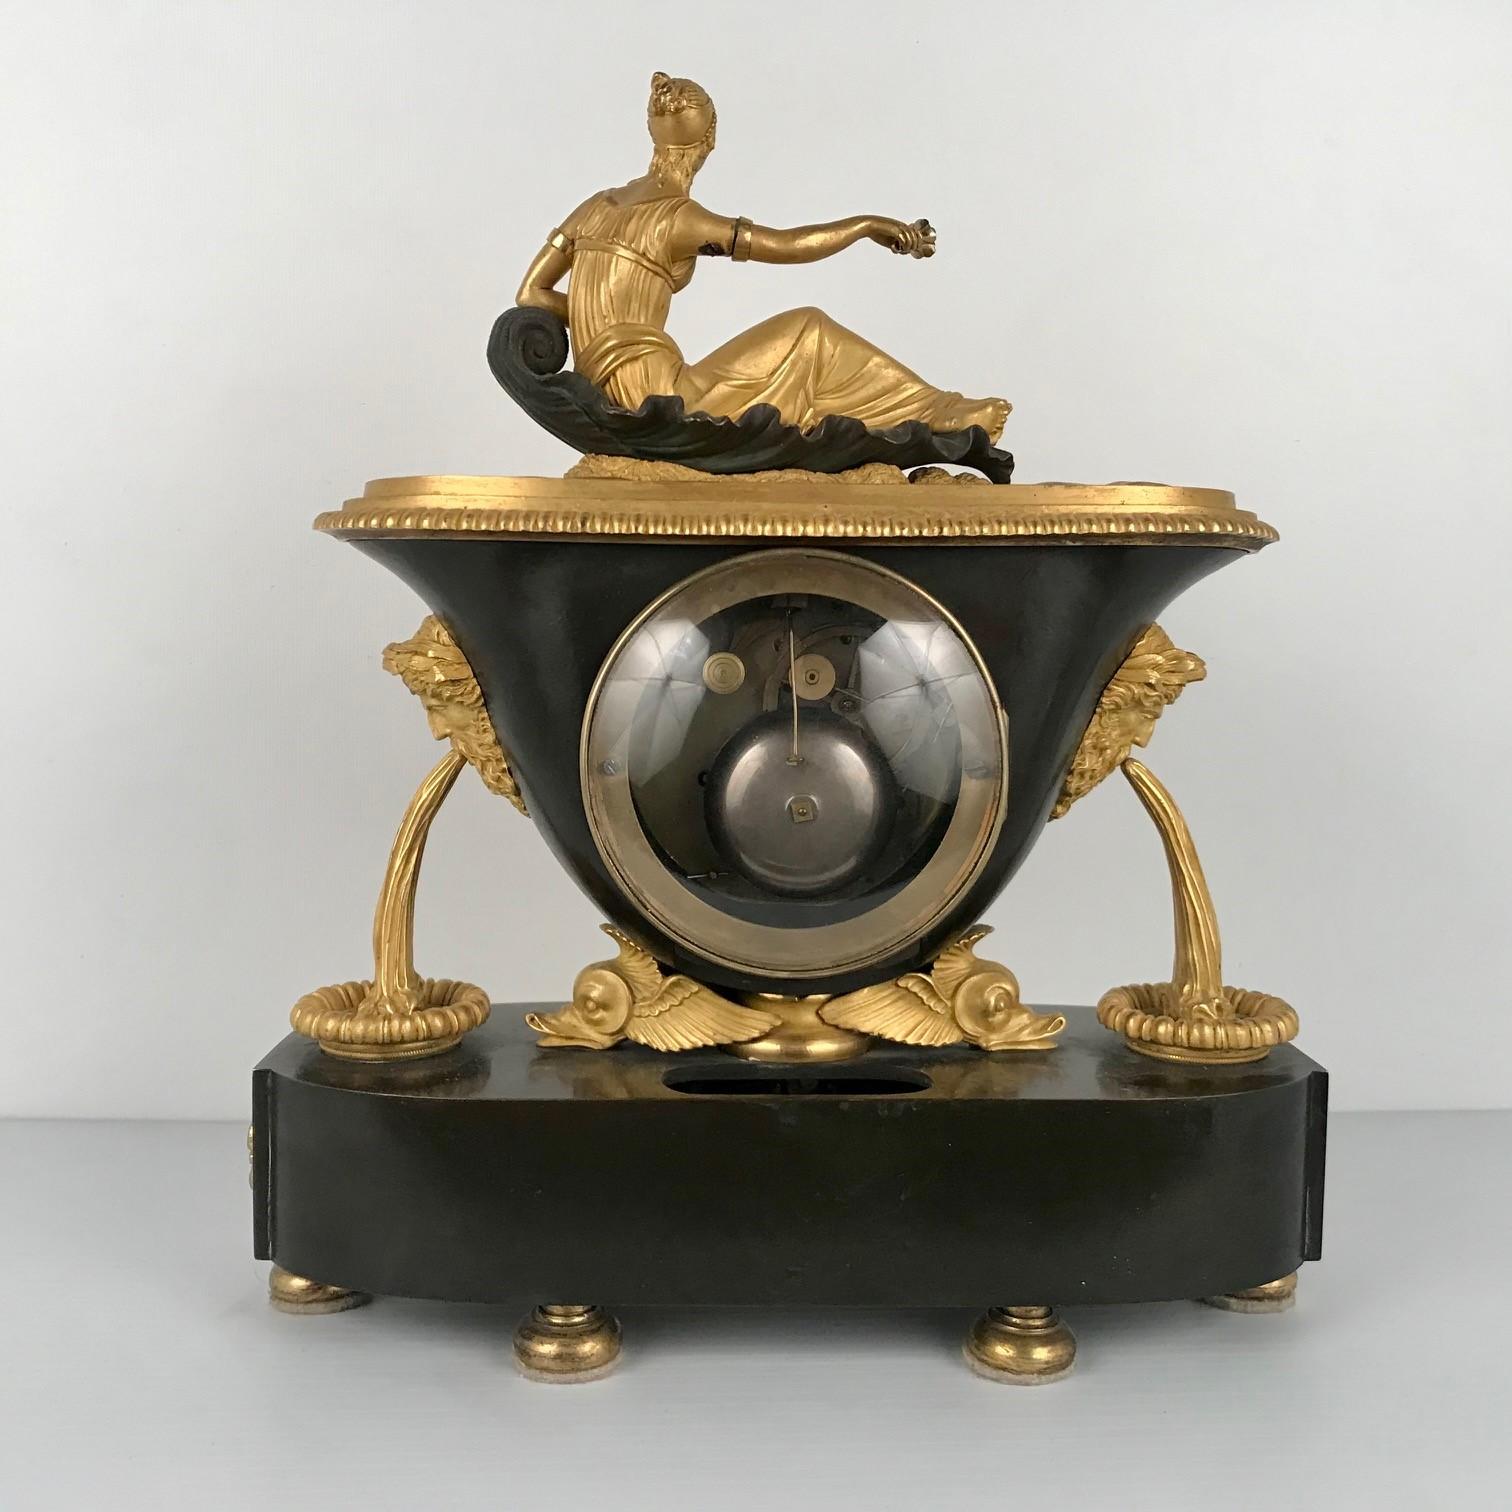 Cast Empire Period Mantle Clock by Leroy a Paris For Sale